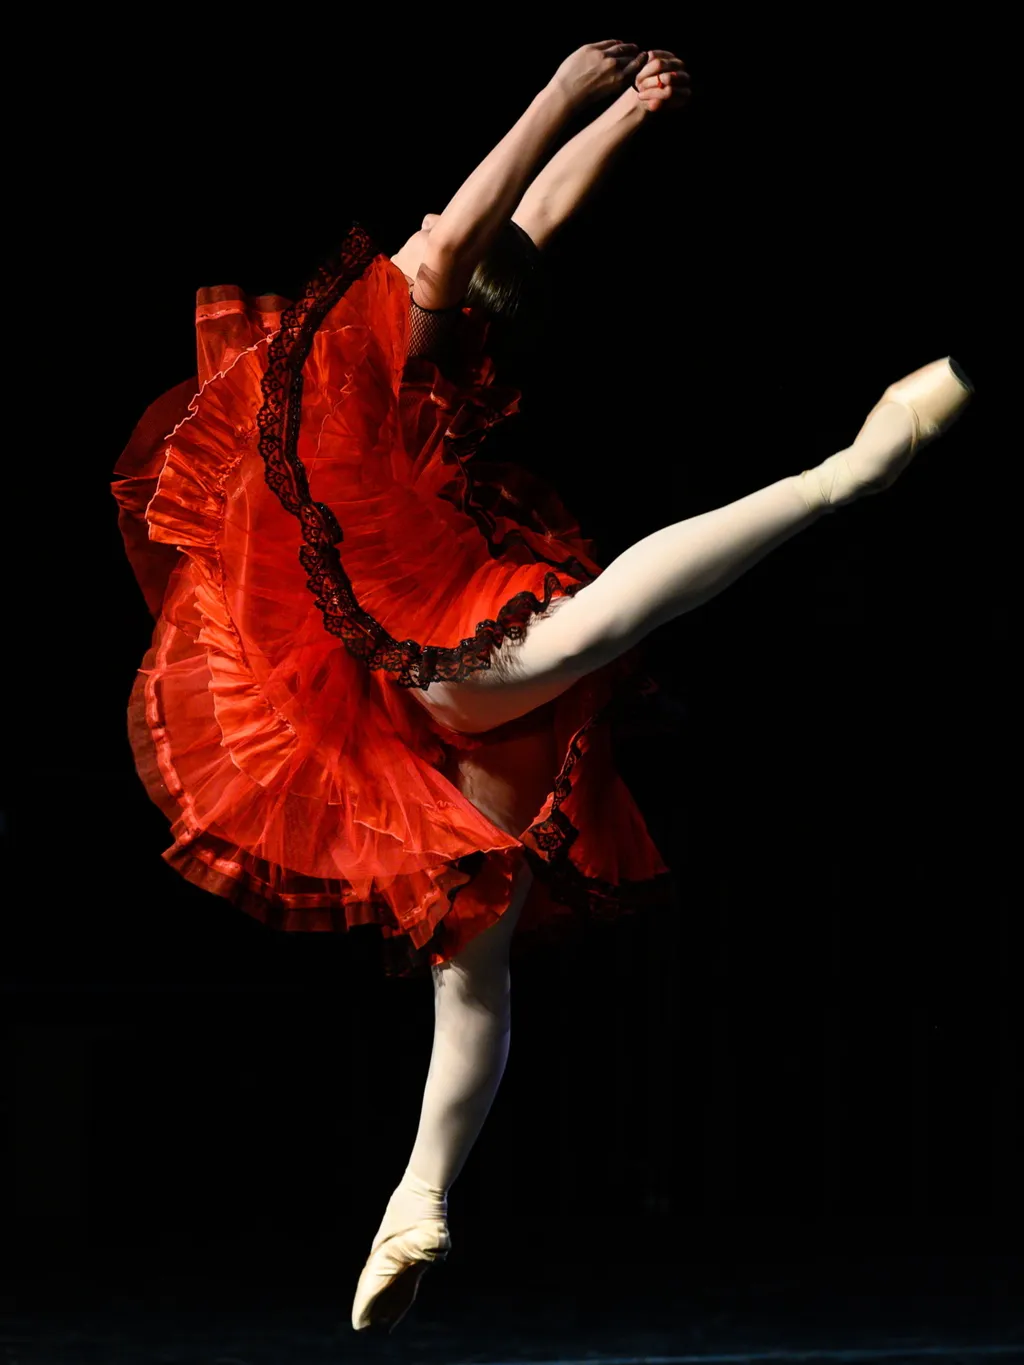 BILIK, Polina balerina balett-táncos CSELEKVÉS egész alakos fotó FOTÓ KÉPKIVÁGÁS Közéleti személyiség foglalkozása művész SZEMÉLY táncol, Balett, Veszprém, 2023. június 26., Magyar Nemzeti Balettintézet igazgatója, Hungarian Ballet Grand Prix 